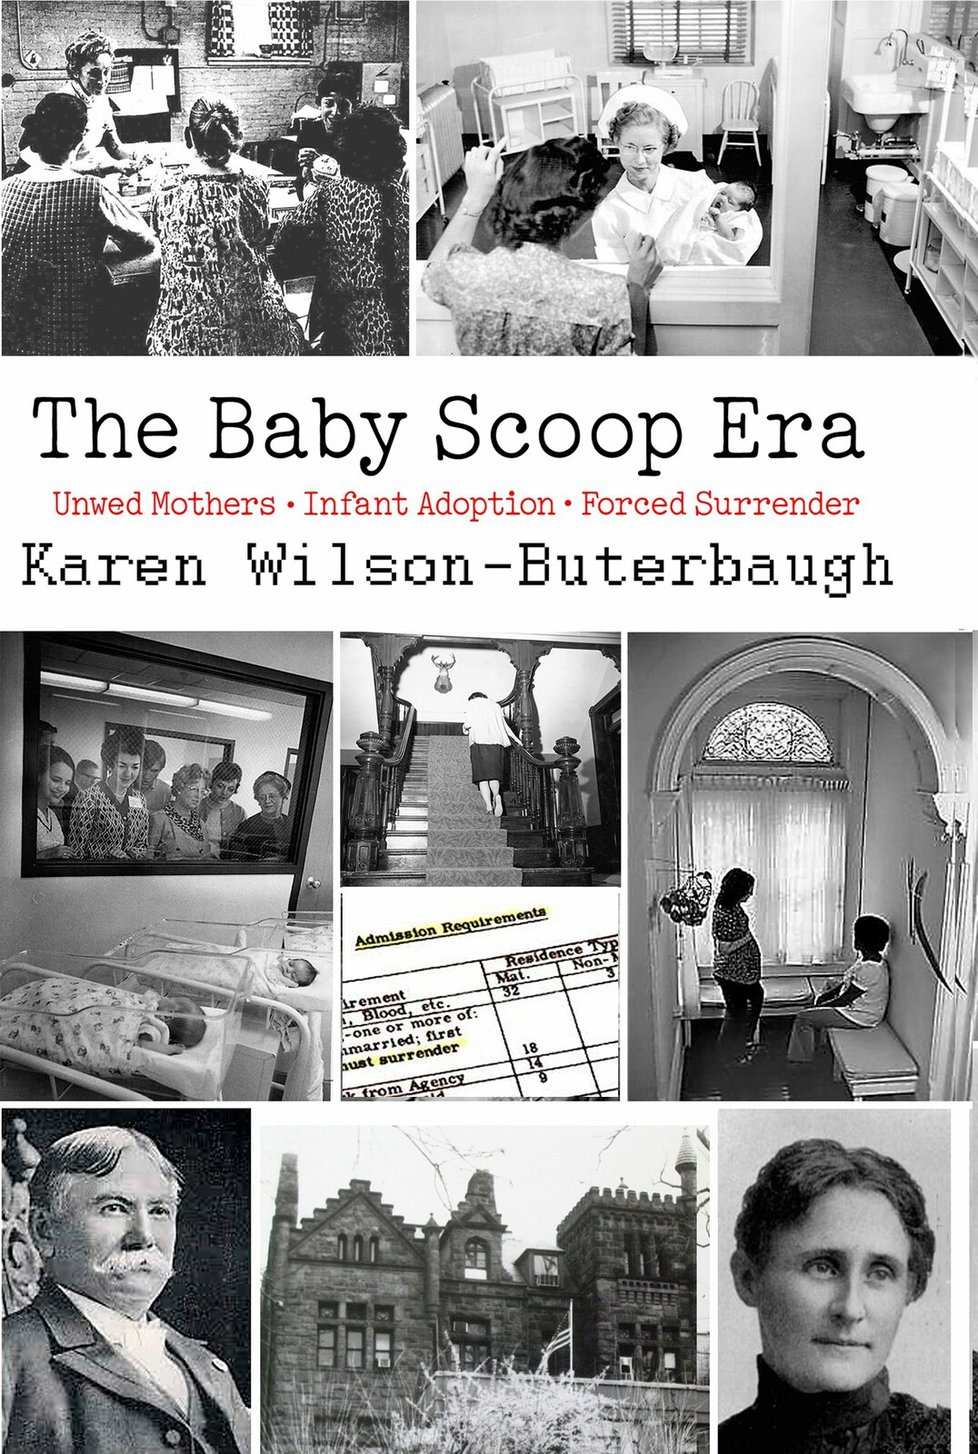 Karen Wilson-Buterbaughová: Éra přehazování dětí lopatou.